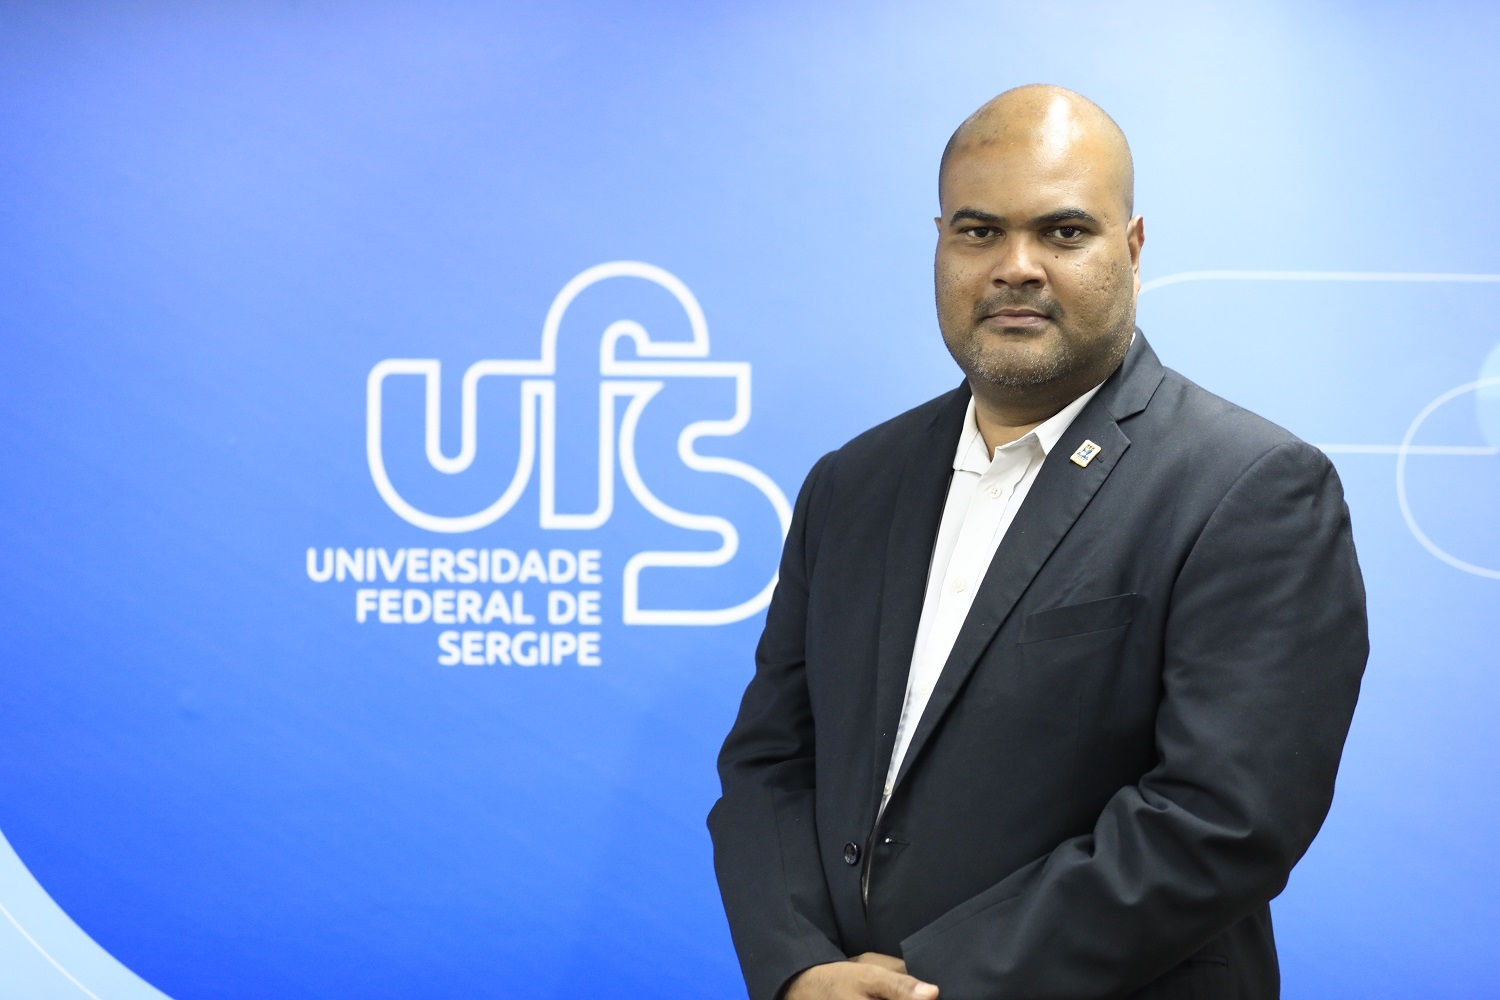 Reitor da UFS, professor Valter Santana, valoriza reconhecimento de pesquisas. Foto: Adilson Andrade